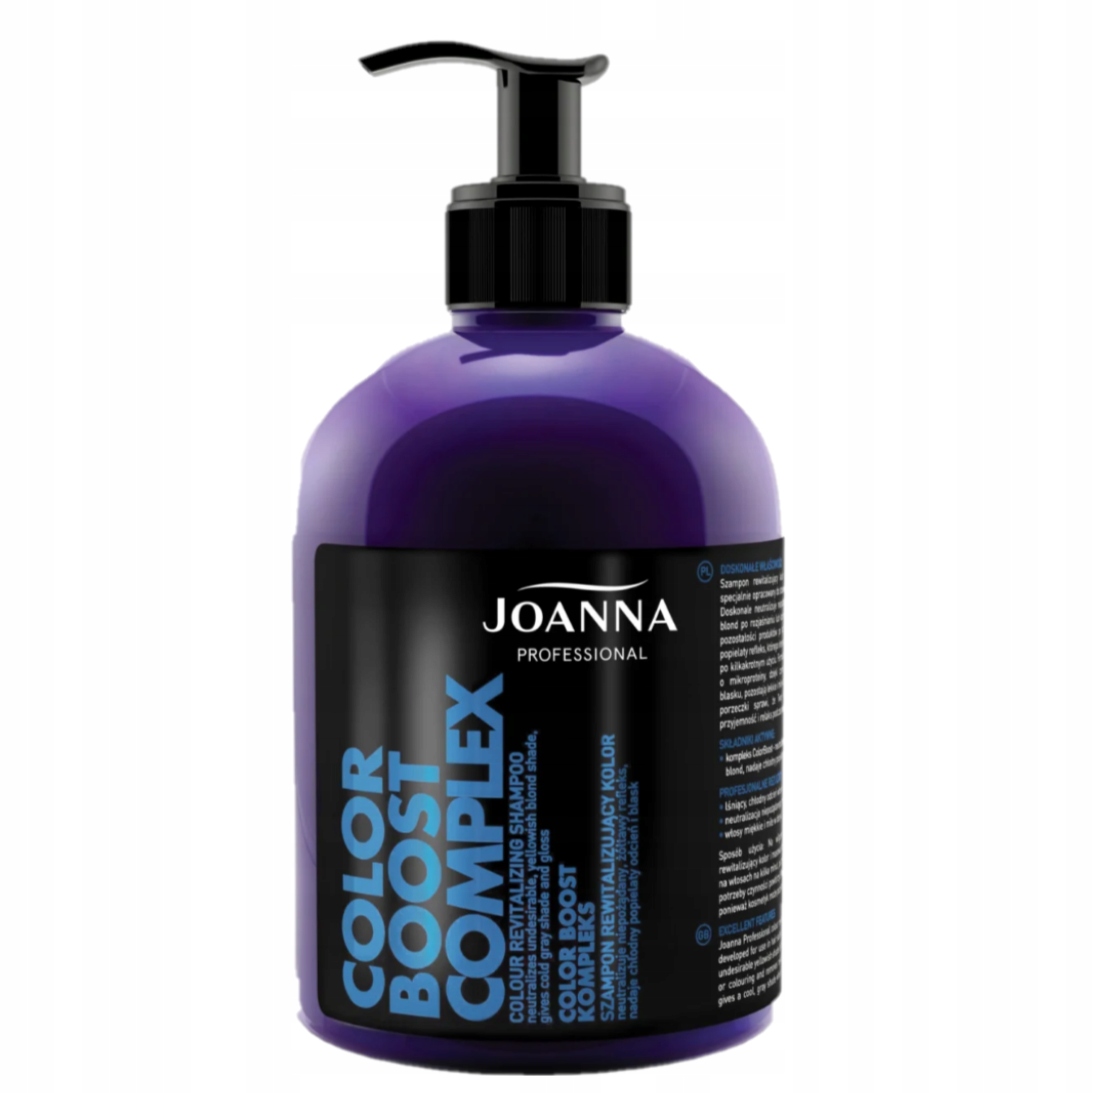 dobry szampon fioletowy joanna opinie